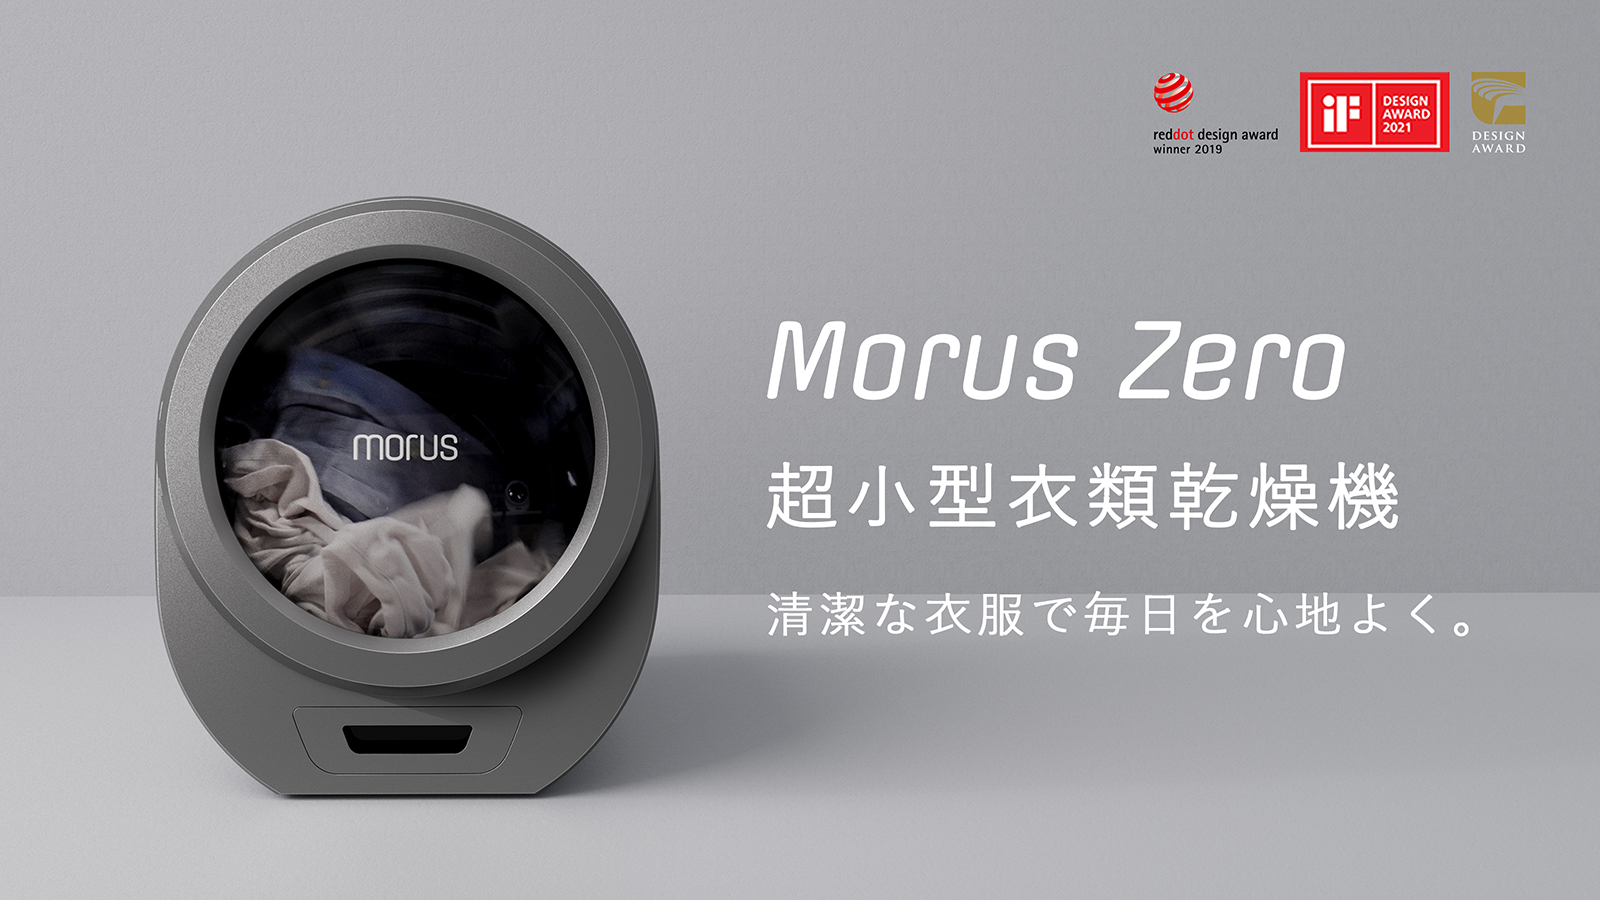 設置工事不要・最短15分で乾燥可能な小型衣類乾燥機「Morus Zero 